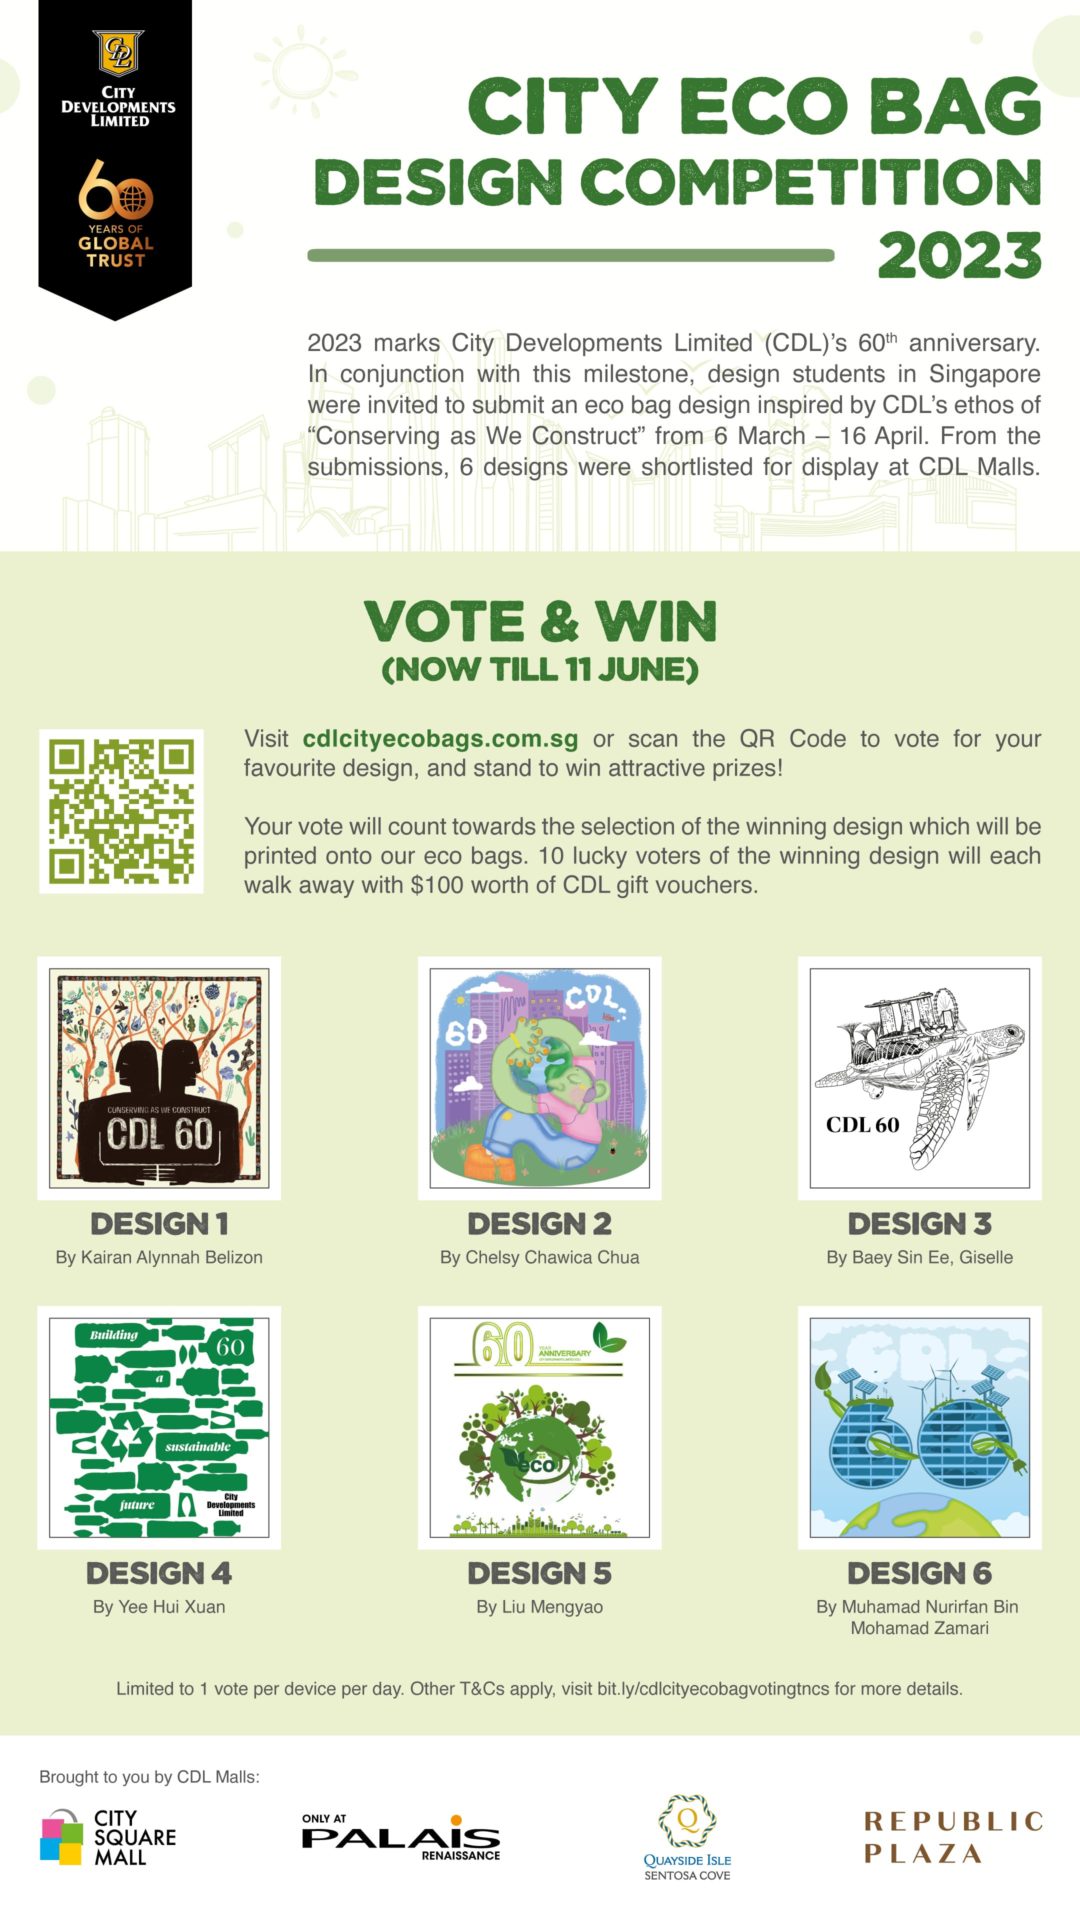 City Eco Bag Design Competition - Vote & Win!